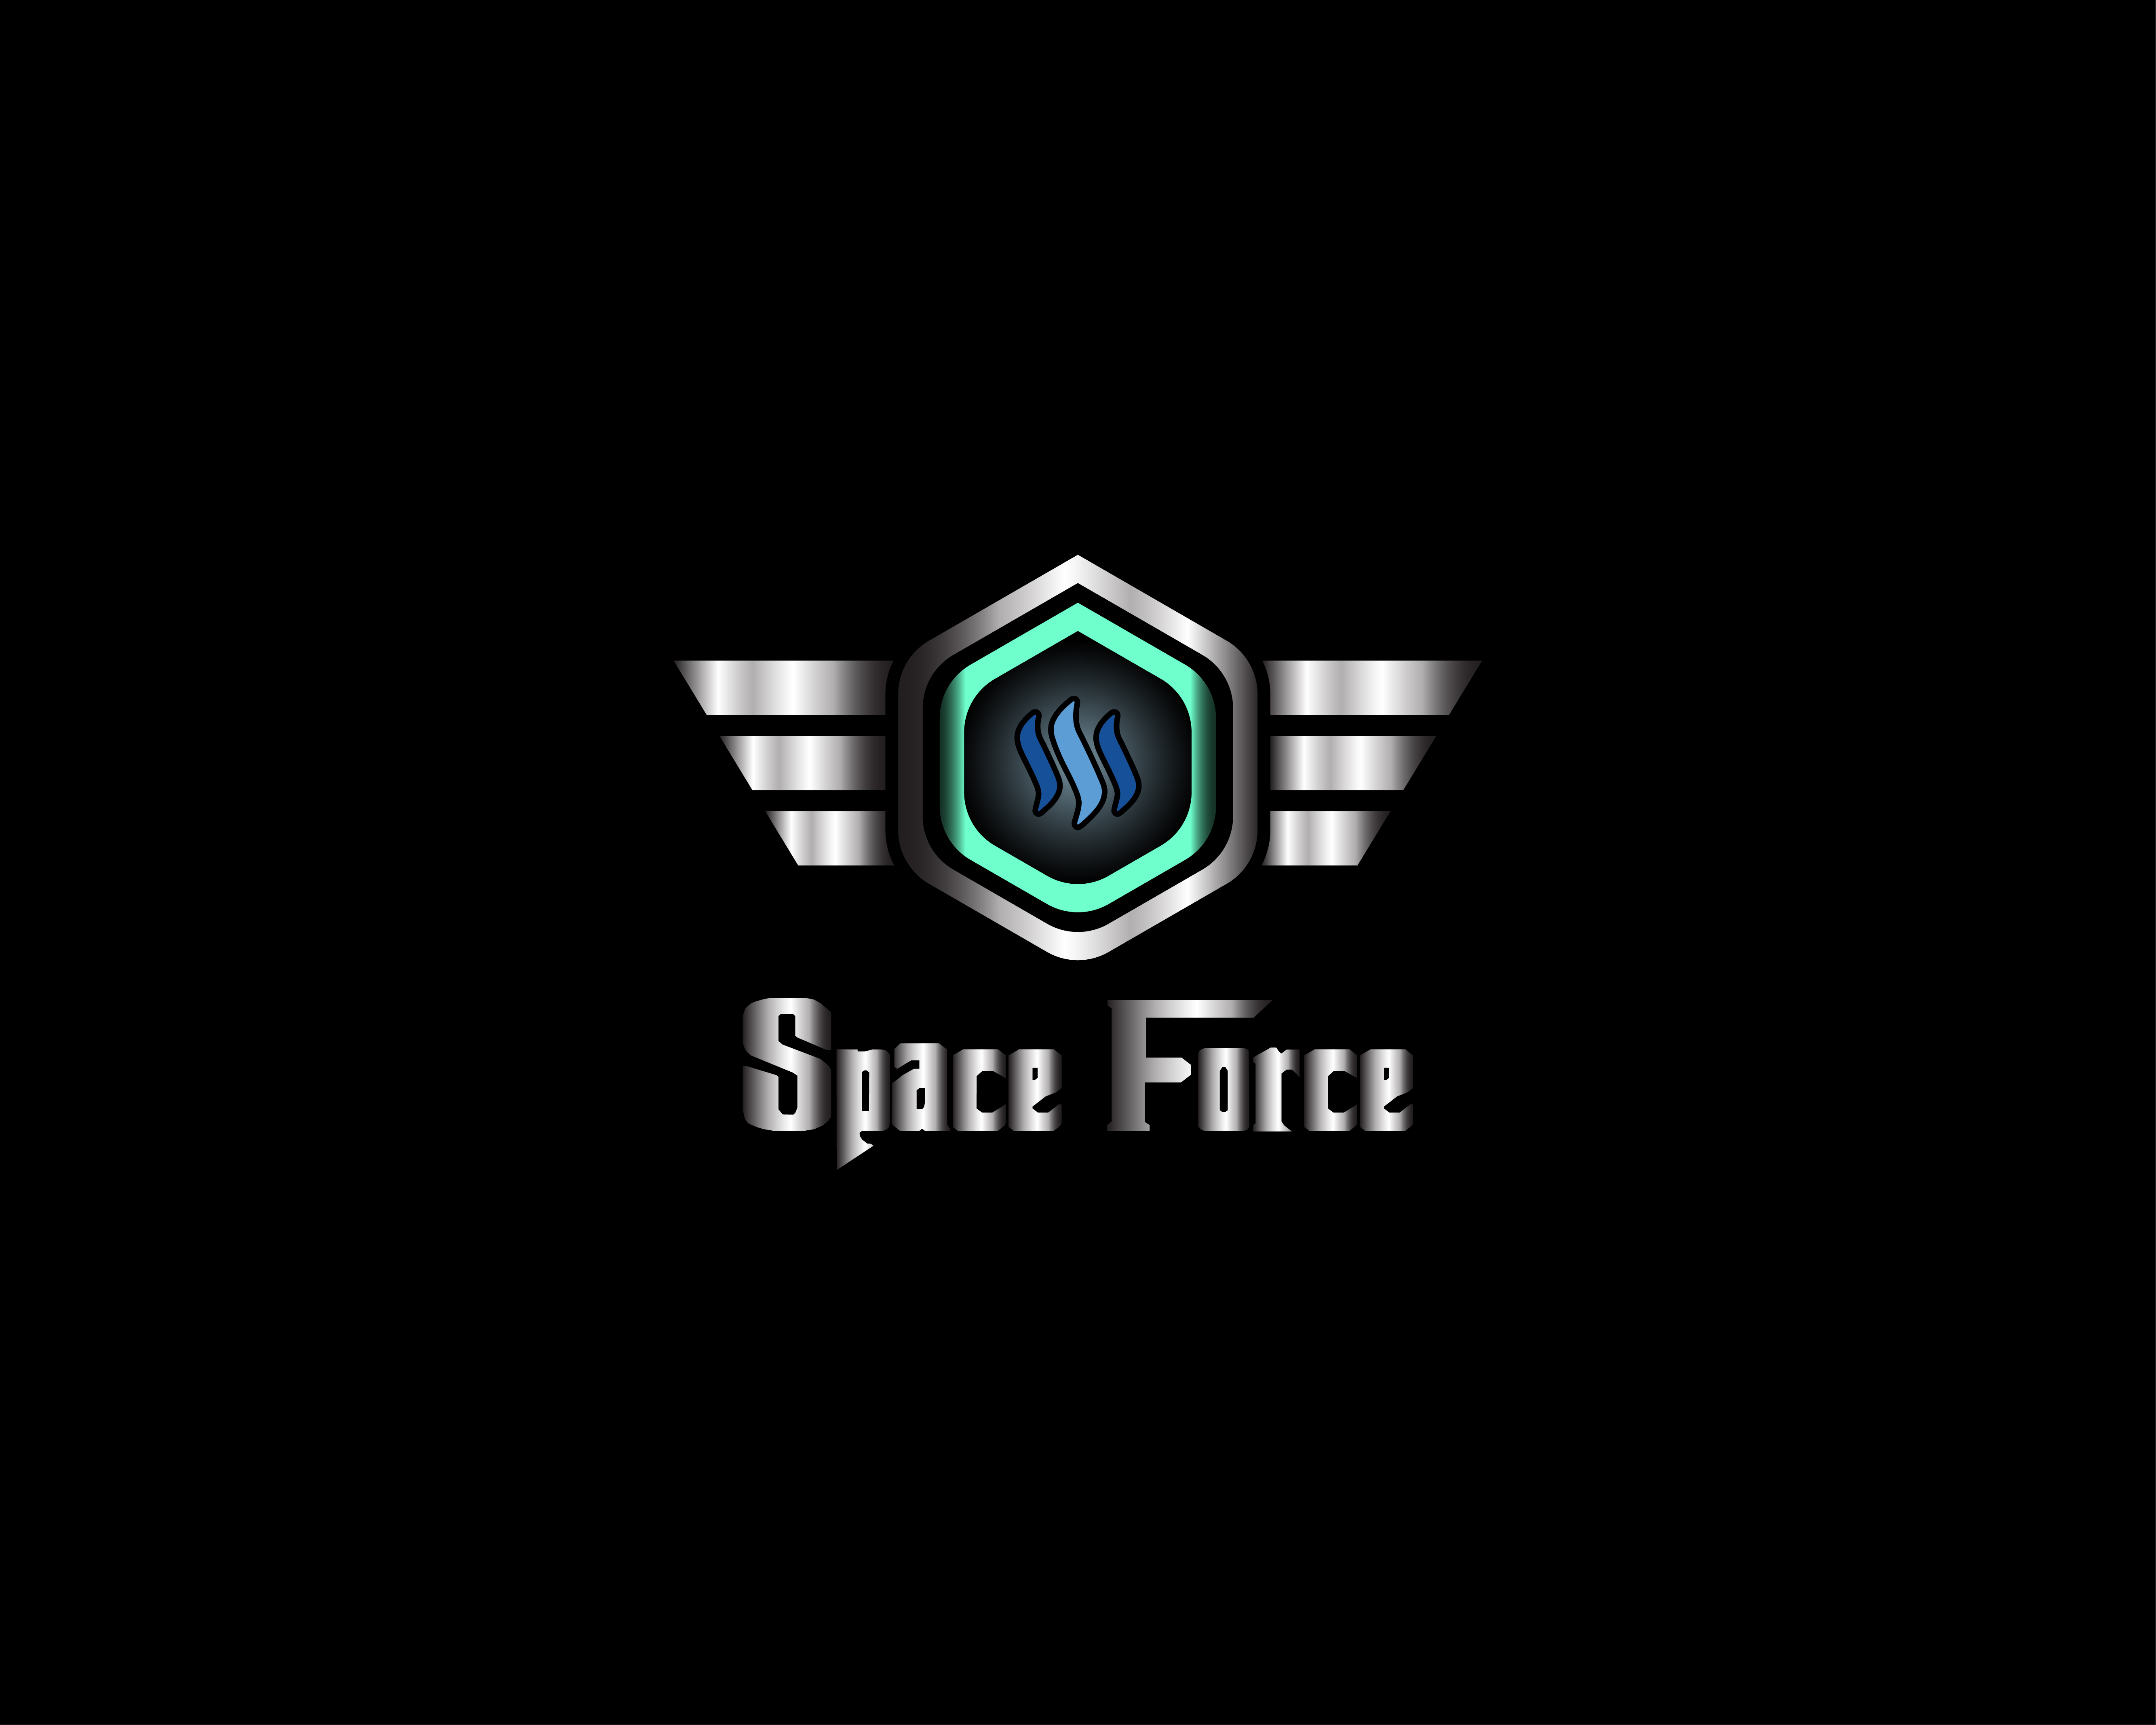 spase force-01.jpg